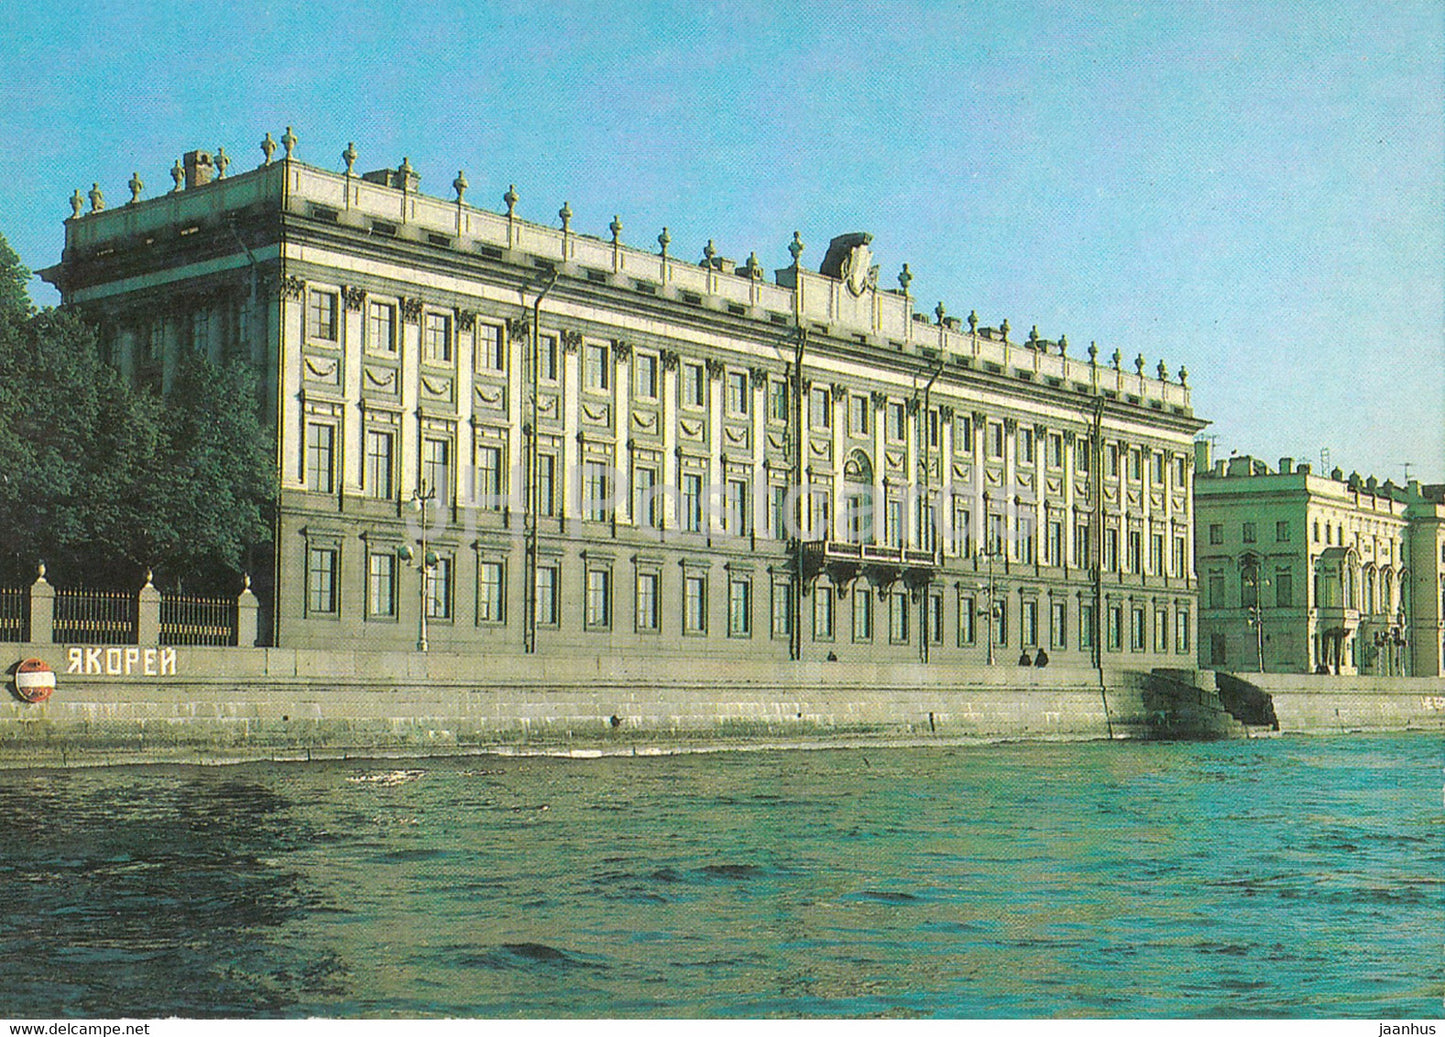 Leningrad - St Petersburg - Marble Palace - postal stationery - 1985 - Russia USSR - unused - JH Postcards